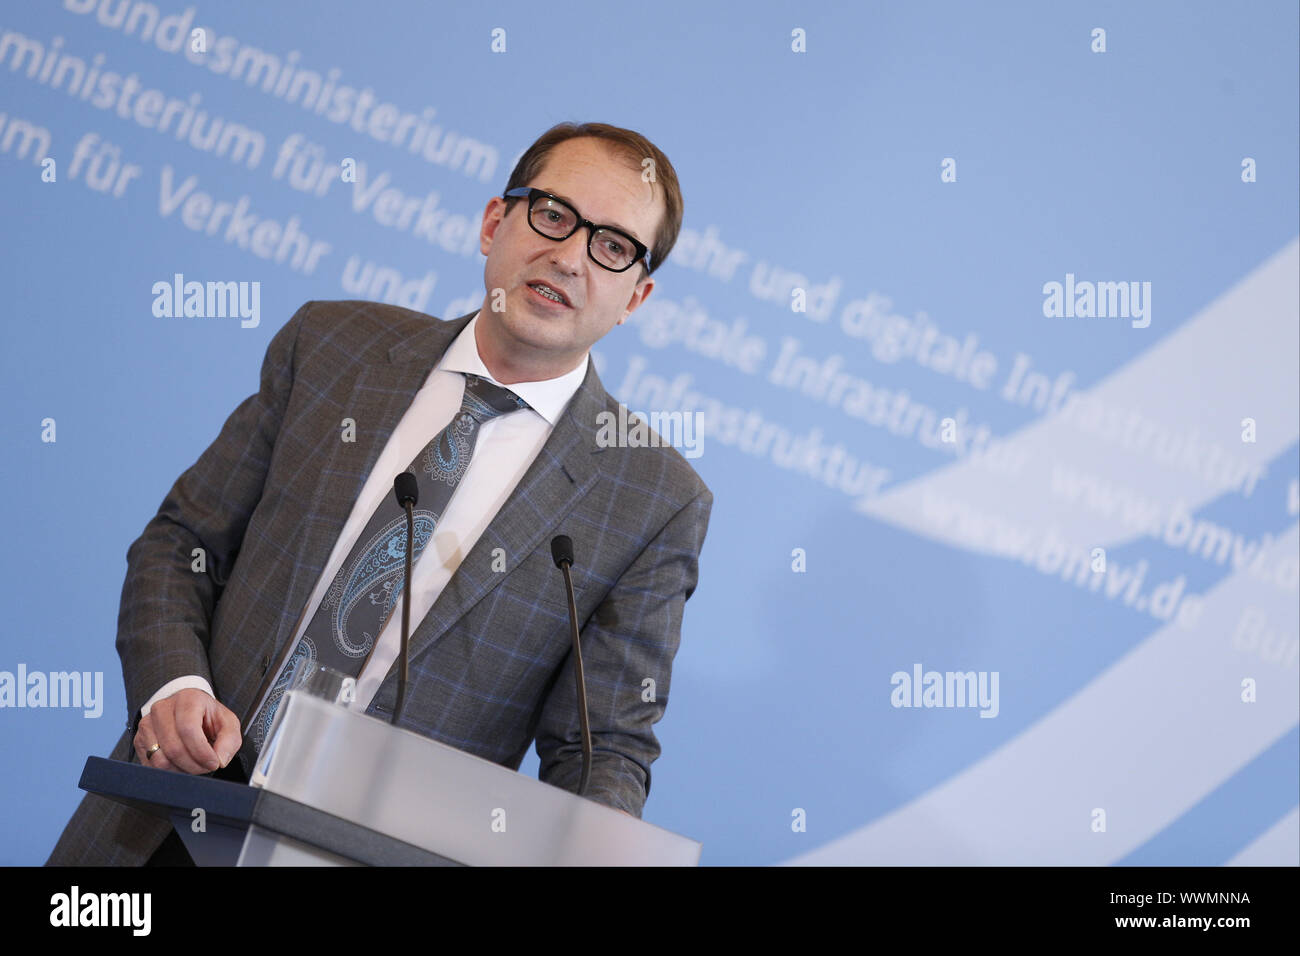 Erklärung von Minister Dobrindt vor der ersten Sitzung des begonnen "Deutschland Digital Network Alliance' Stockfoto